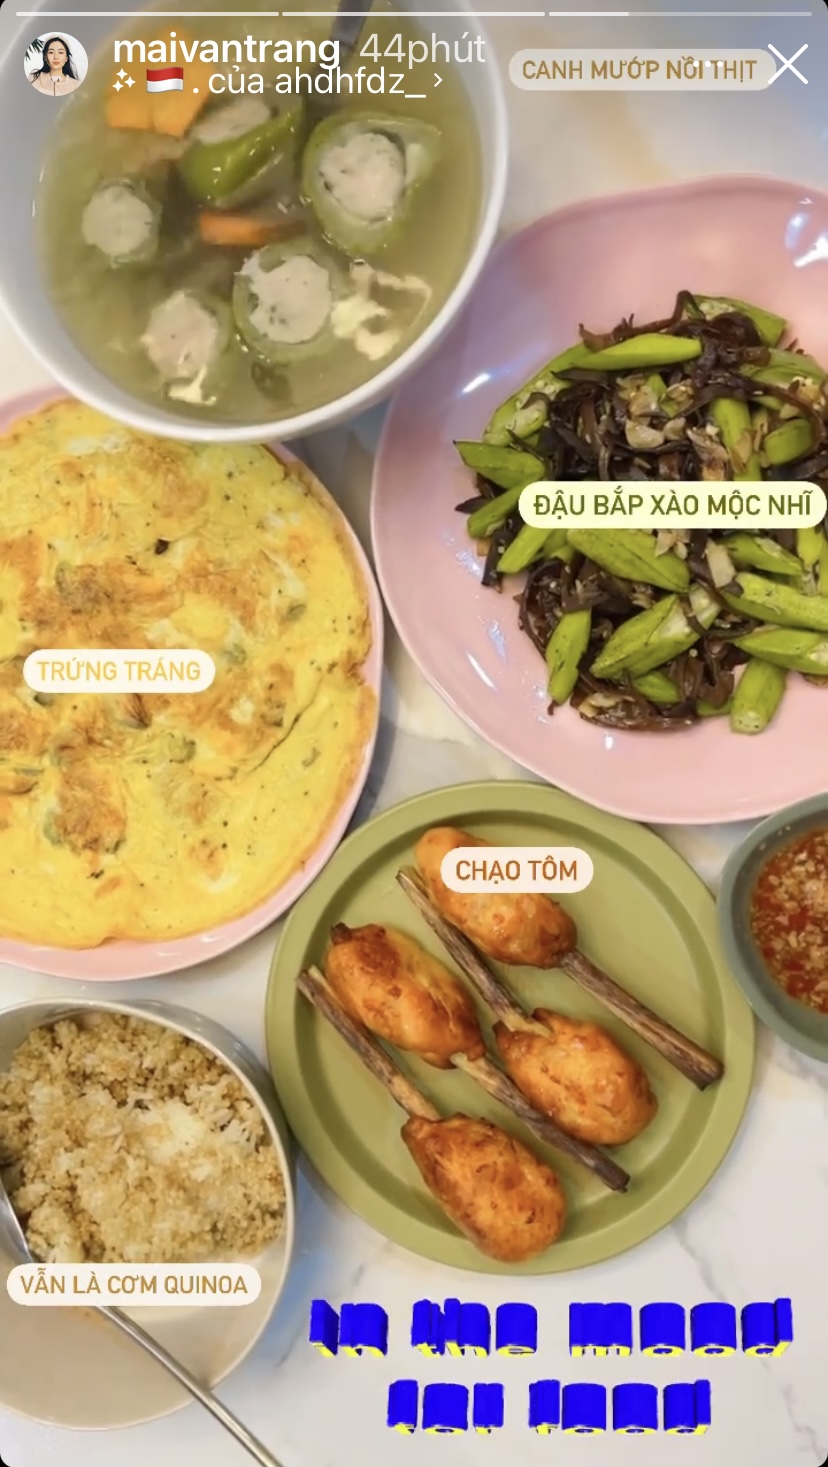 ... bàn ăn nhà beauty blogger Mai Vân Trang còn có nhiều món ăn bổ dưỡng như canh mướp nhồi thịt, đậu bắp xào mộc nhĩ, chạo tôm, trứng tráng.